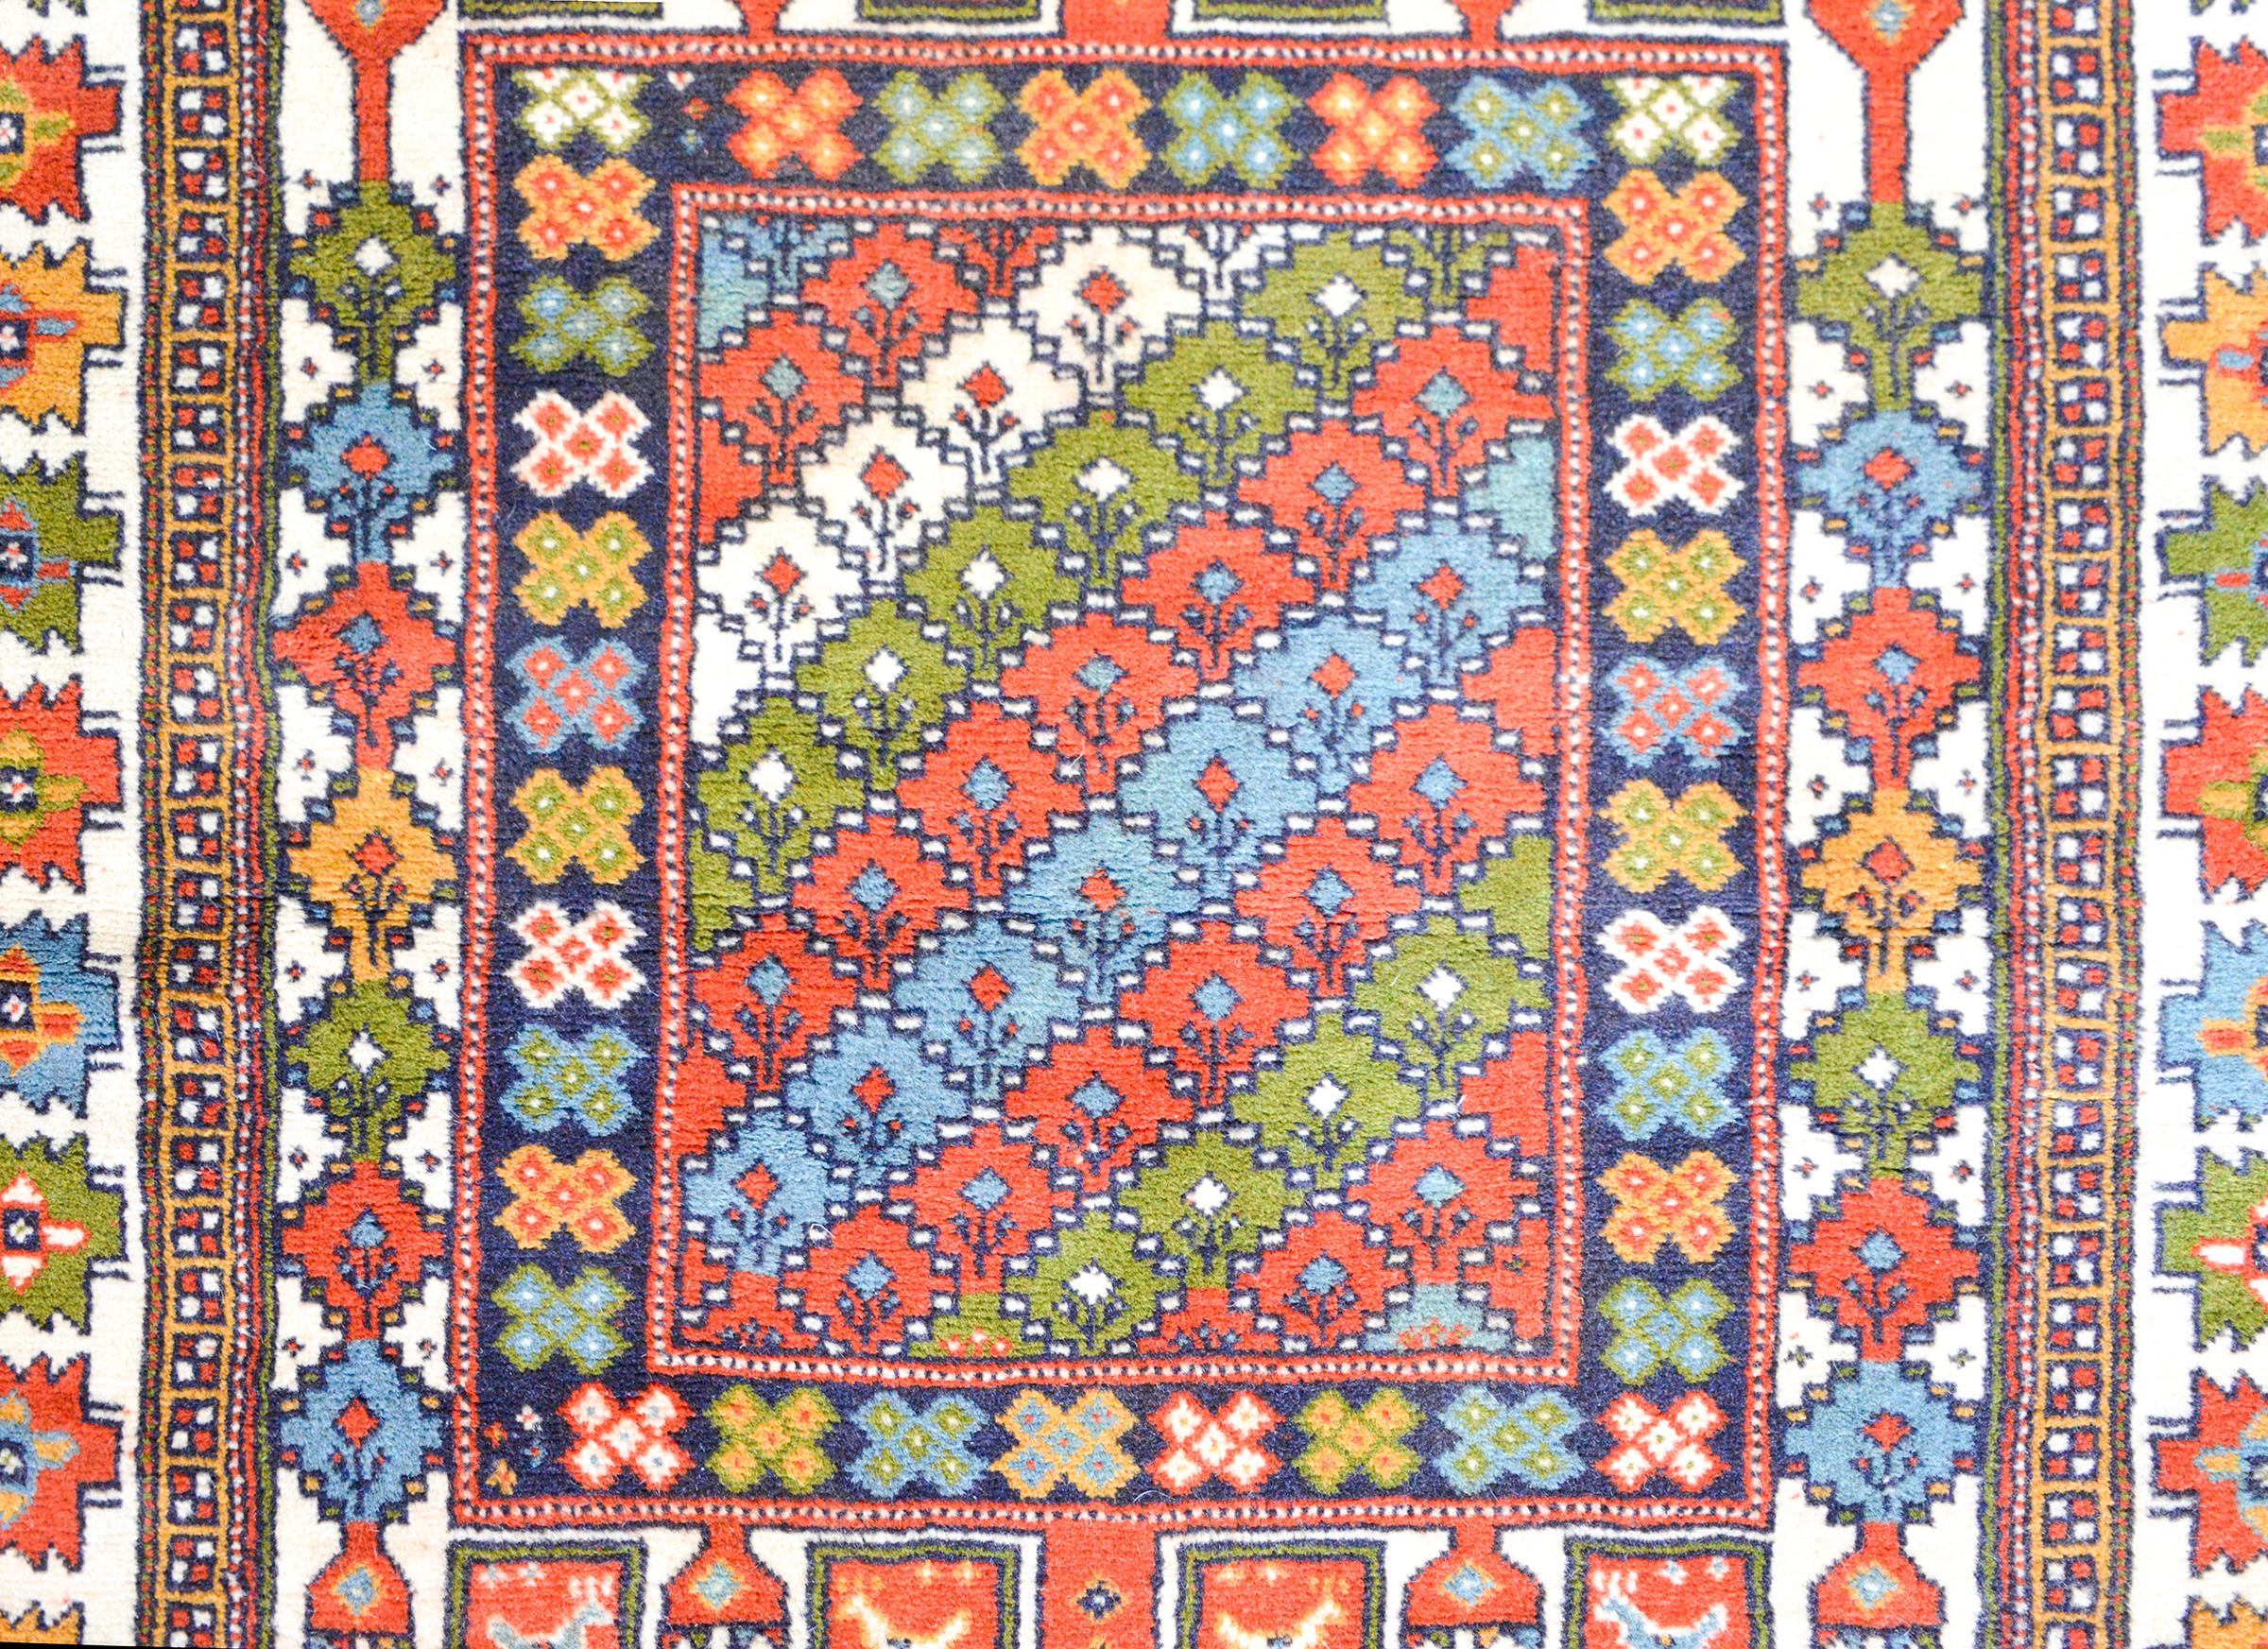 Ein rührender türkischer Teppich aus Anatolien mit einem farbenprächtigen Muster aus stilisierten Blumen, Hühnern und Lebensbäumen, die alle in leuchtenden Korallen-, Grün-, Gold- und Blautönen gewebt und von einer Bordüre mit weiteren stilisierten